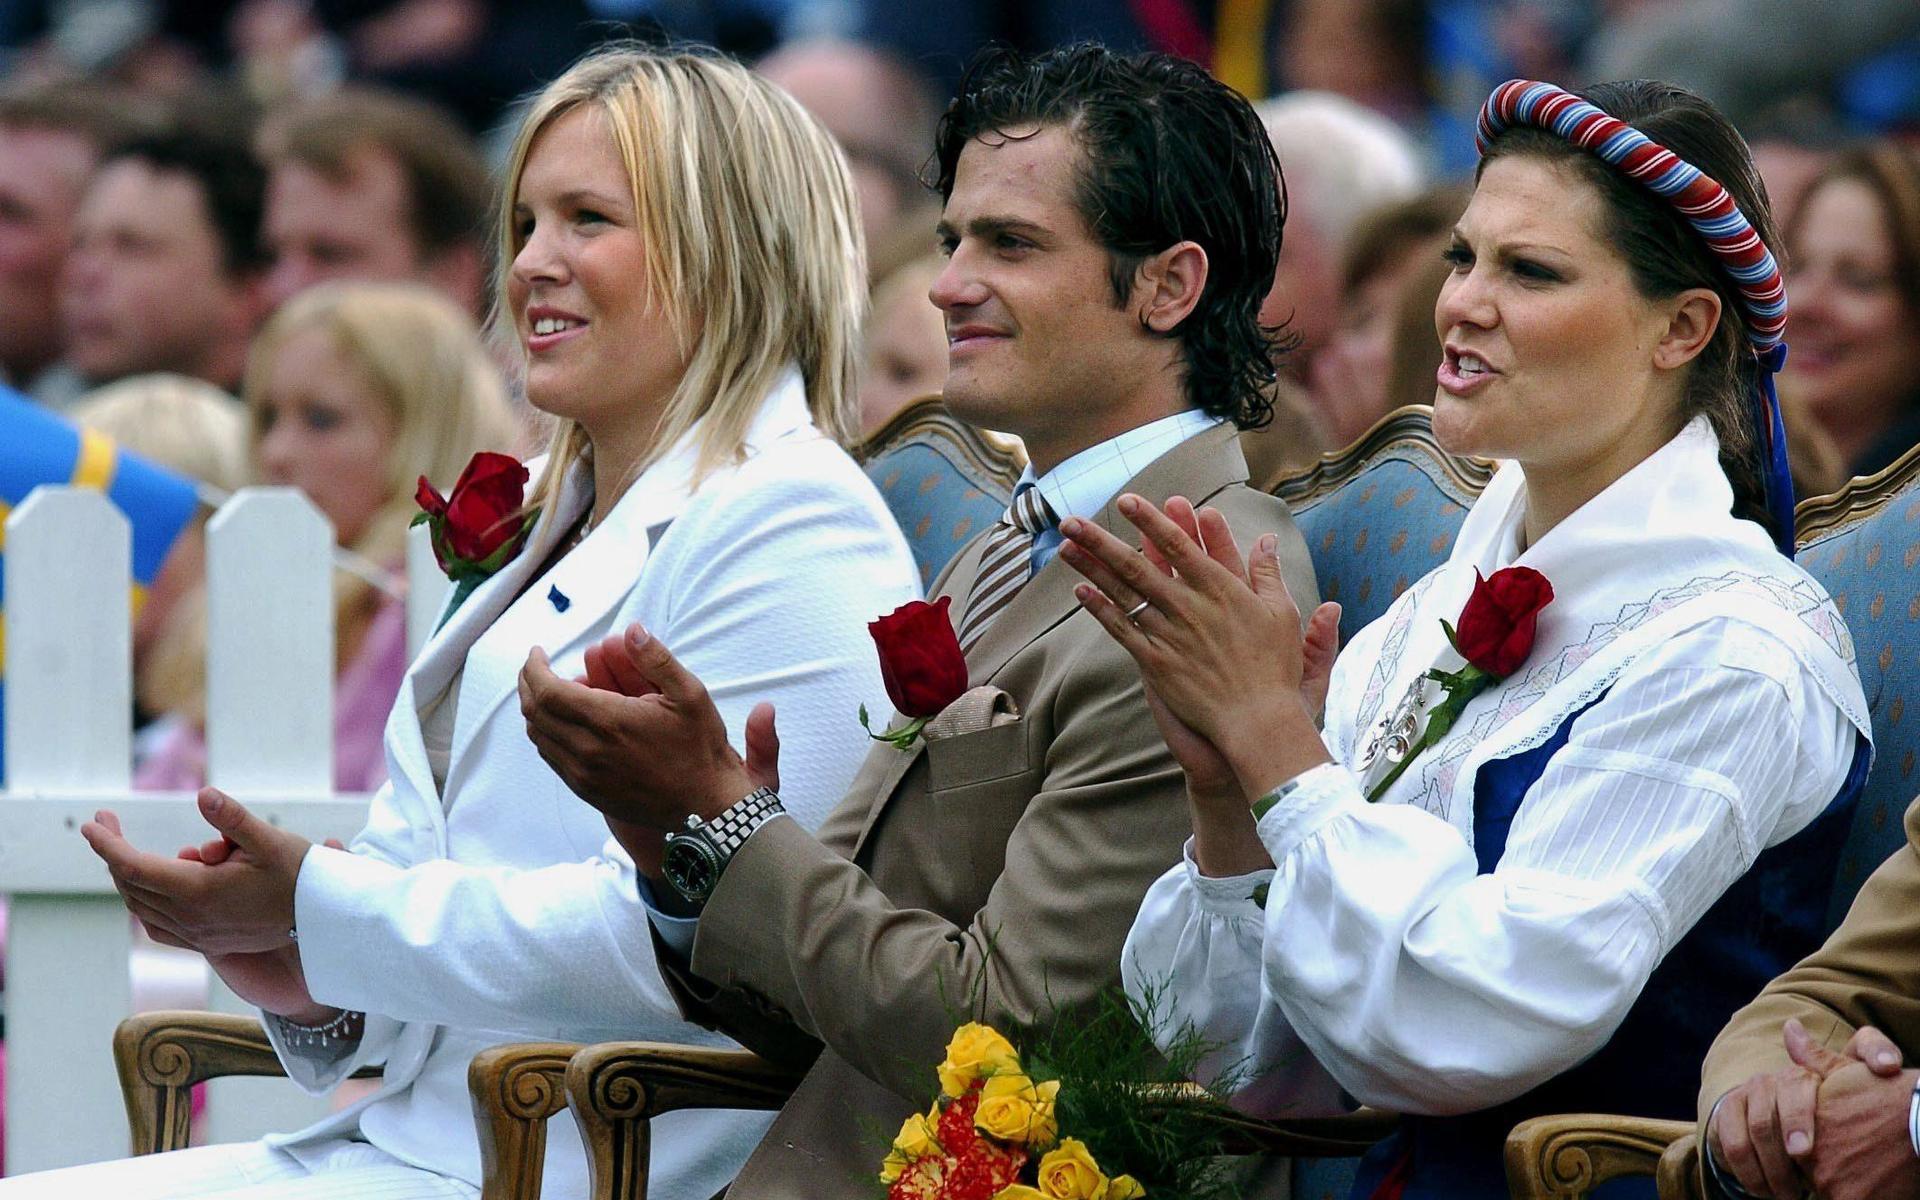 2004 firade kronprinsessan sin 27-årsdag med bland andra Anja Pärson och prins Carl Philip.